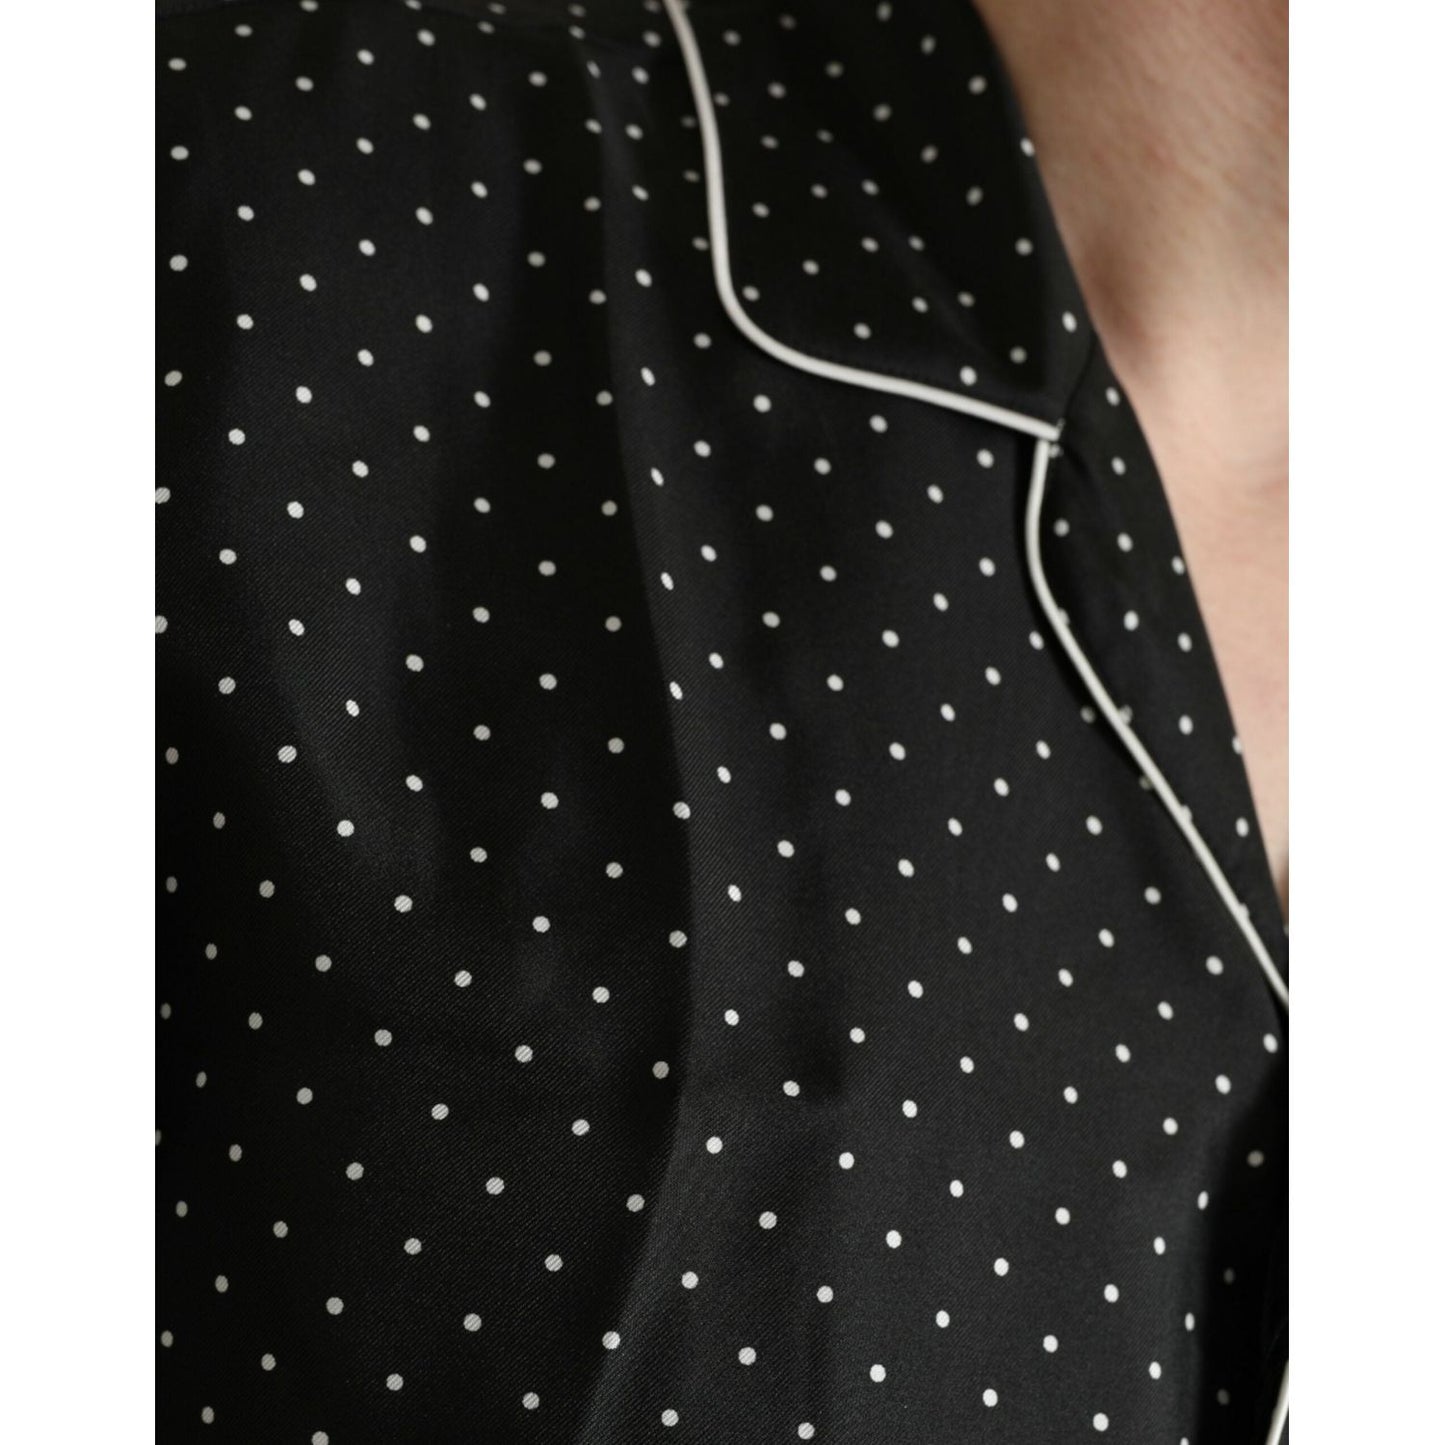 Dolce & Gabbana Black Polka Dot Silk Long Sleeve Shirt black-polka-dot-silk-long-sleeve-shirt